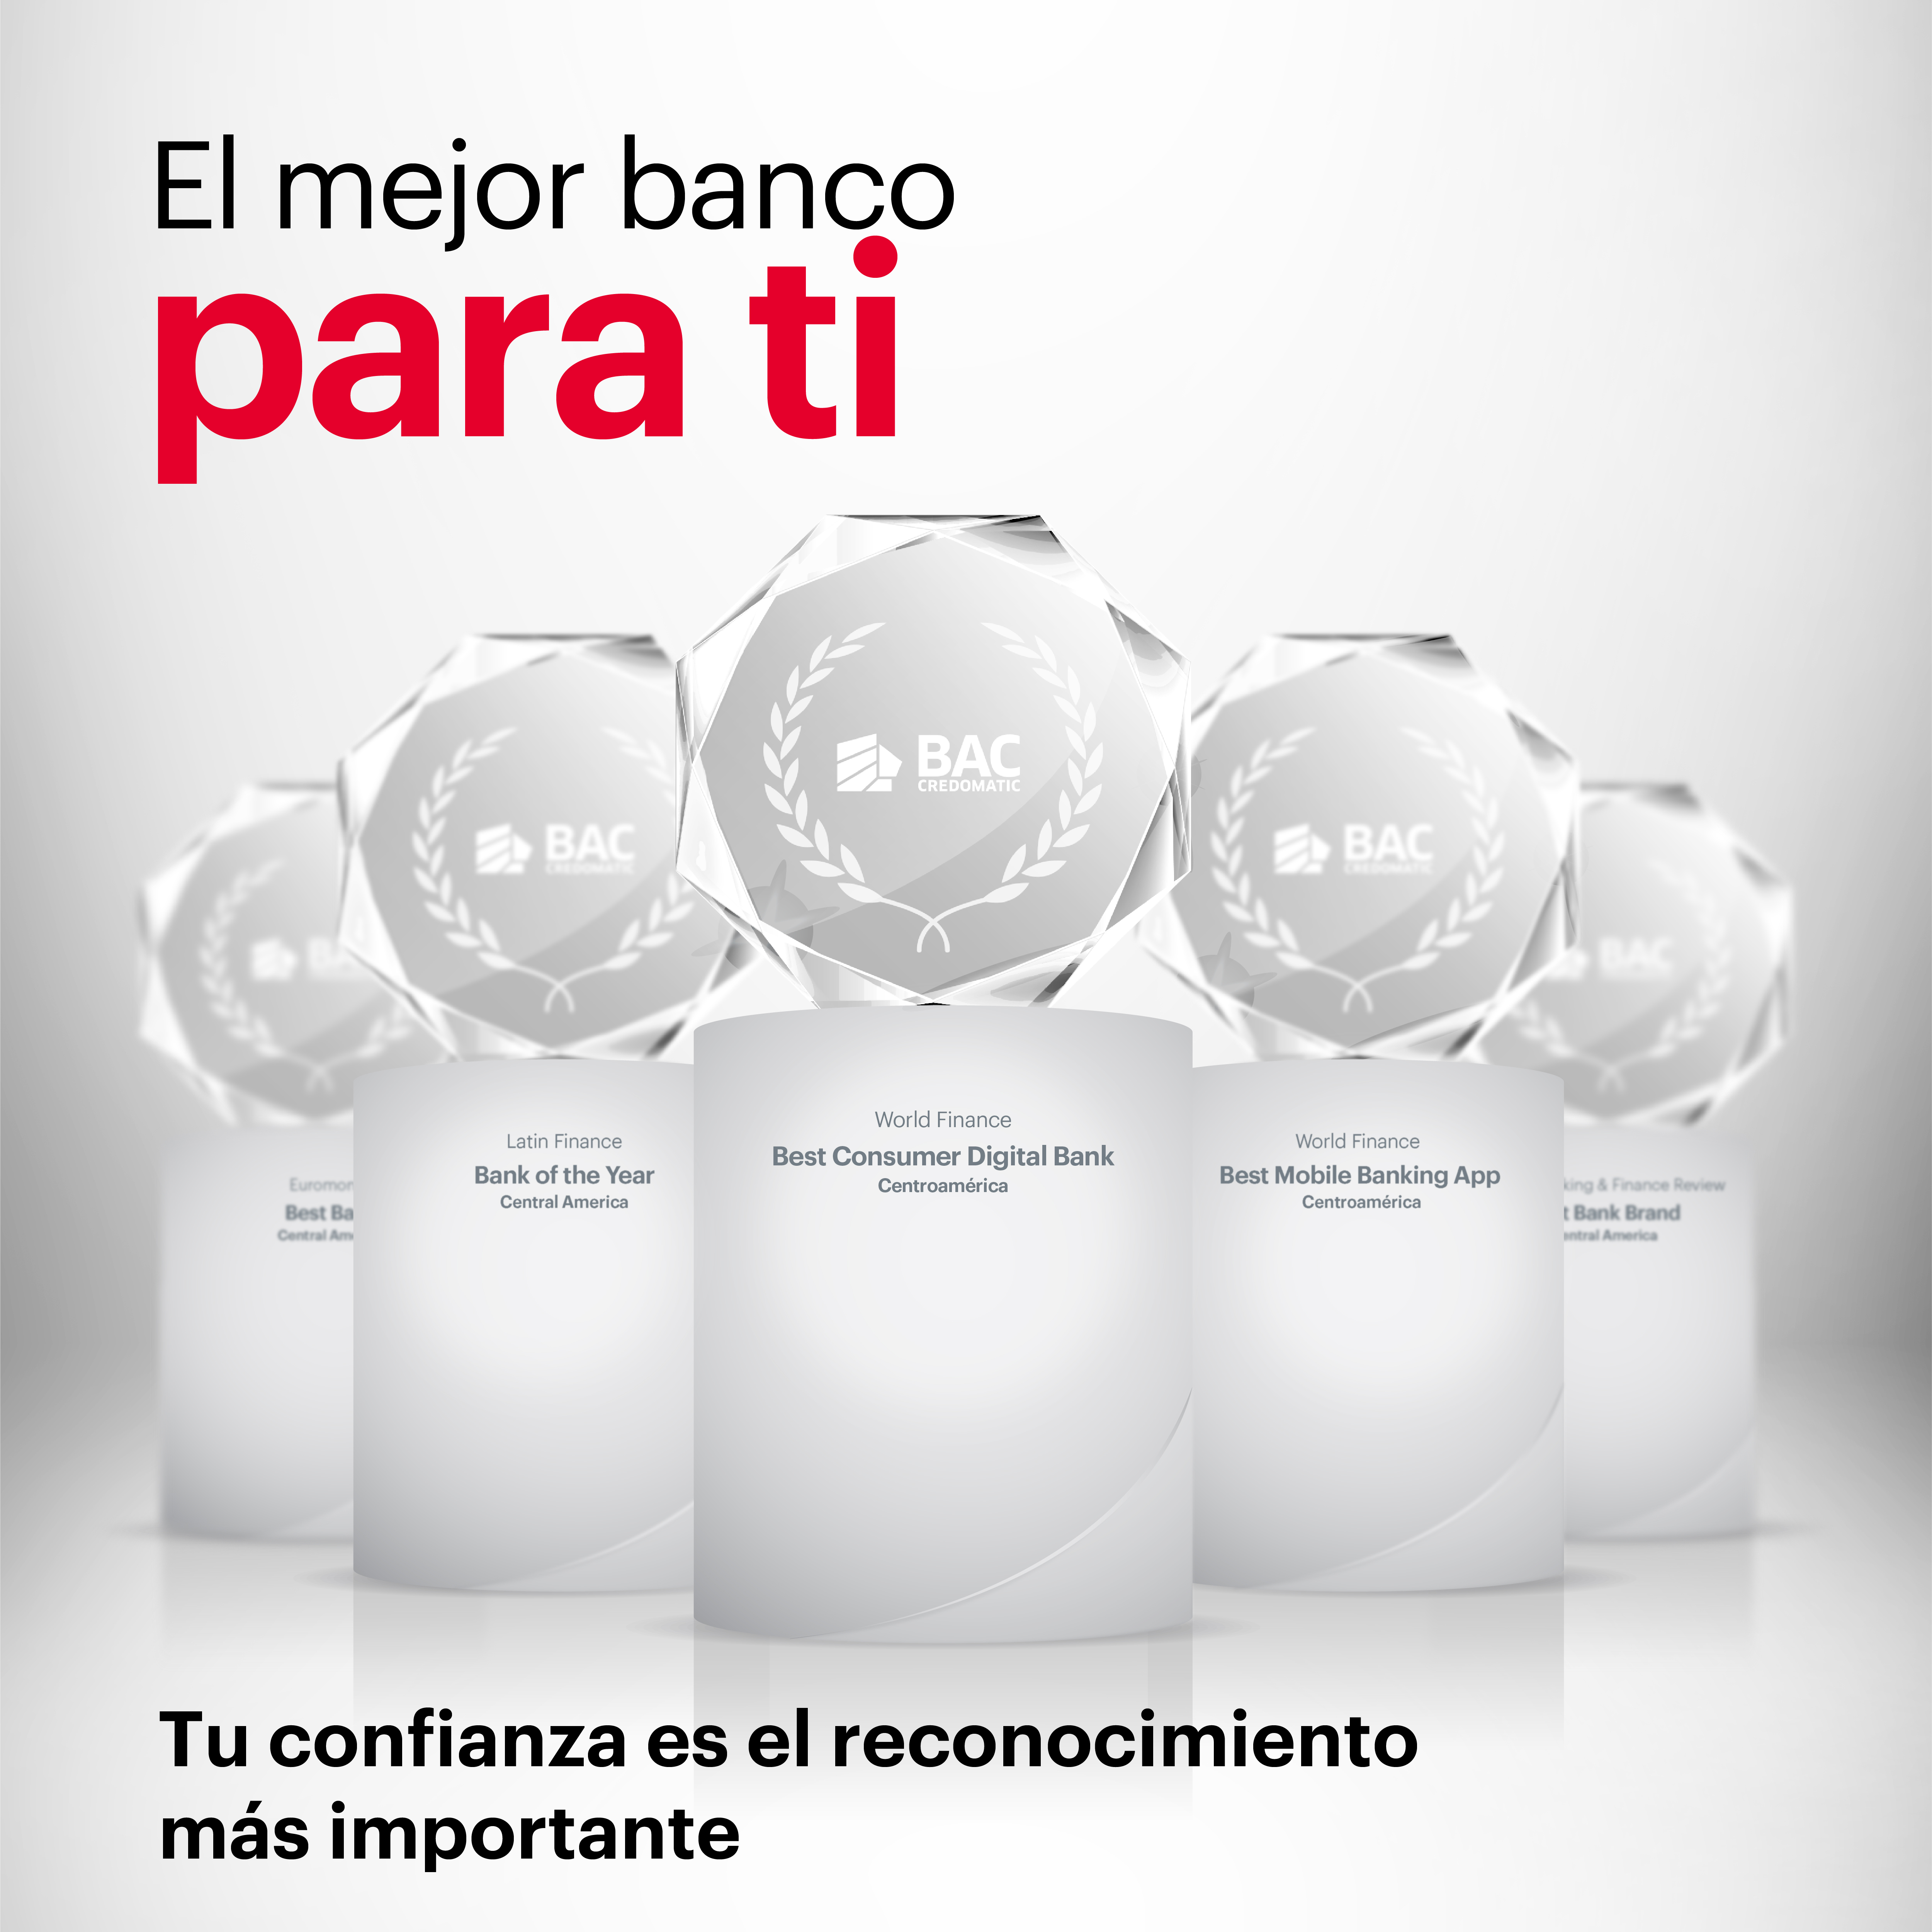 BAC Credomatic recibe 27 premios y reconocimientos internacionales durante el 2020